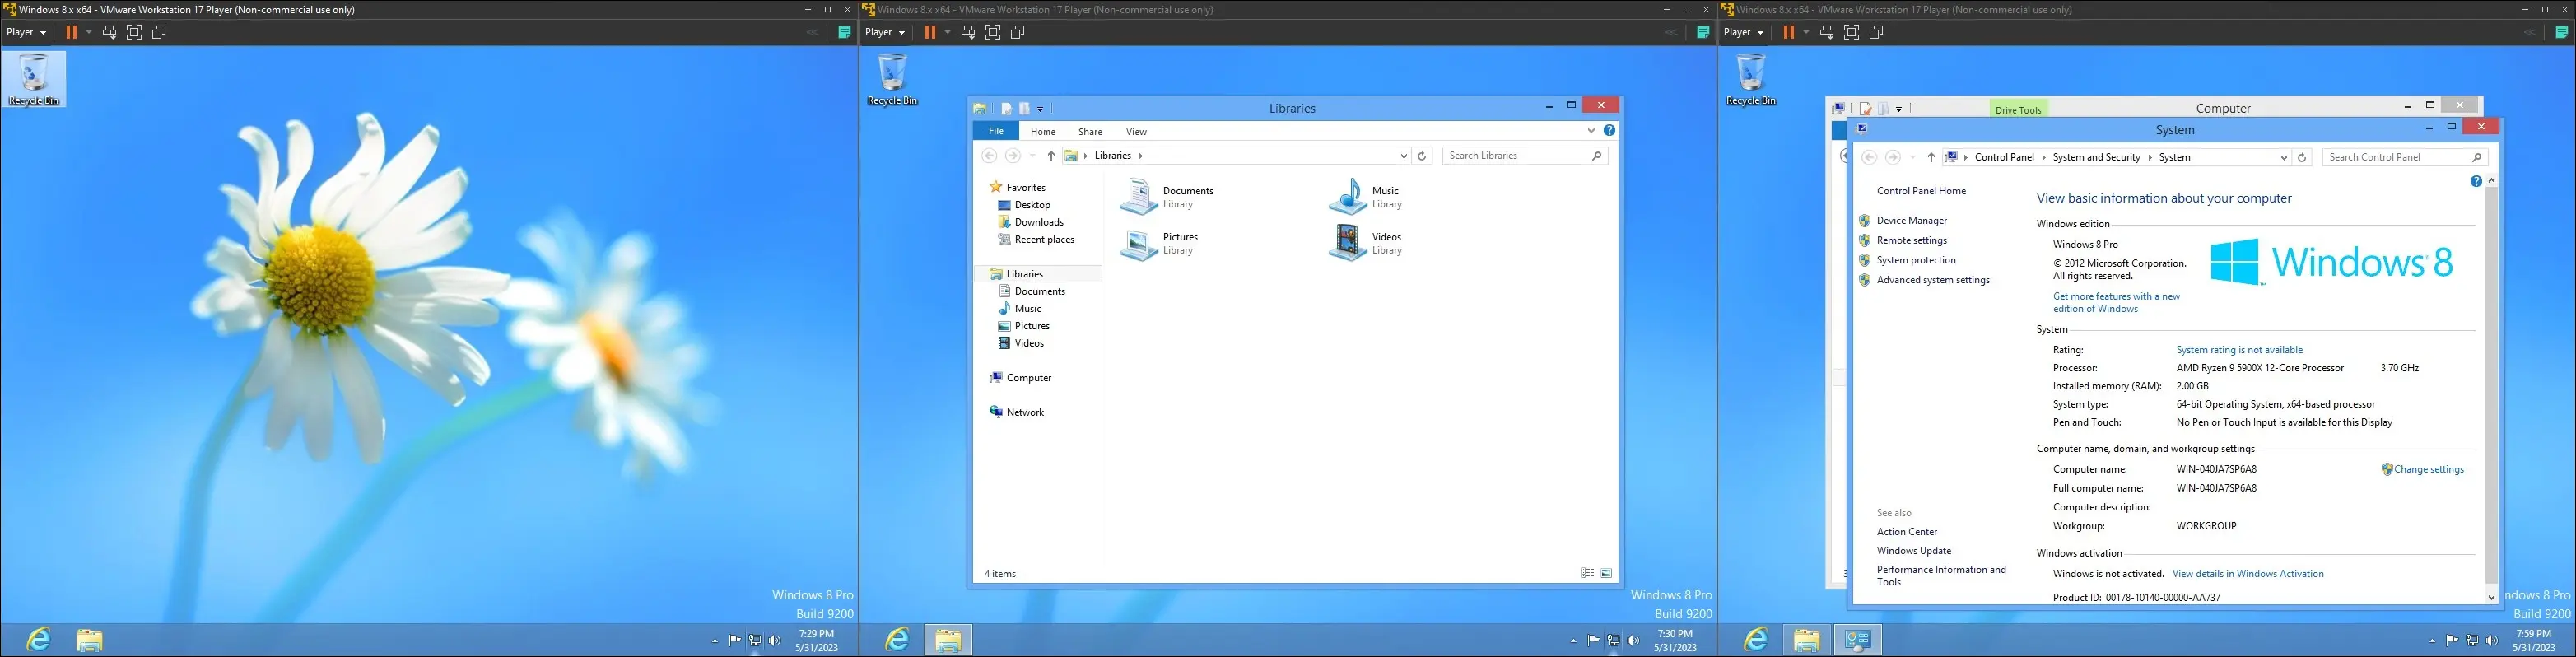 صور Windows 8 على جهاز افتراضي ، تعرض سطح المكتب وواجهة المستكشف و "حول صفحة الكمبيوتر"